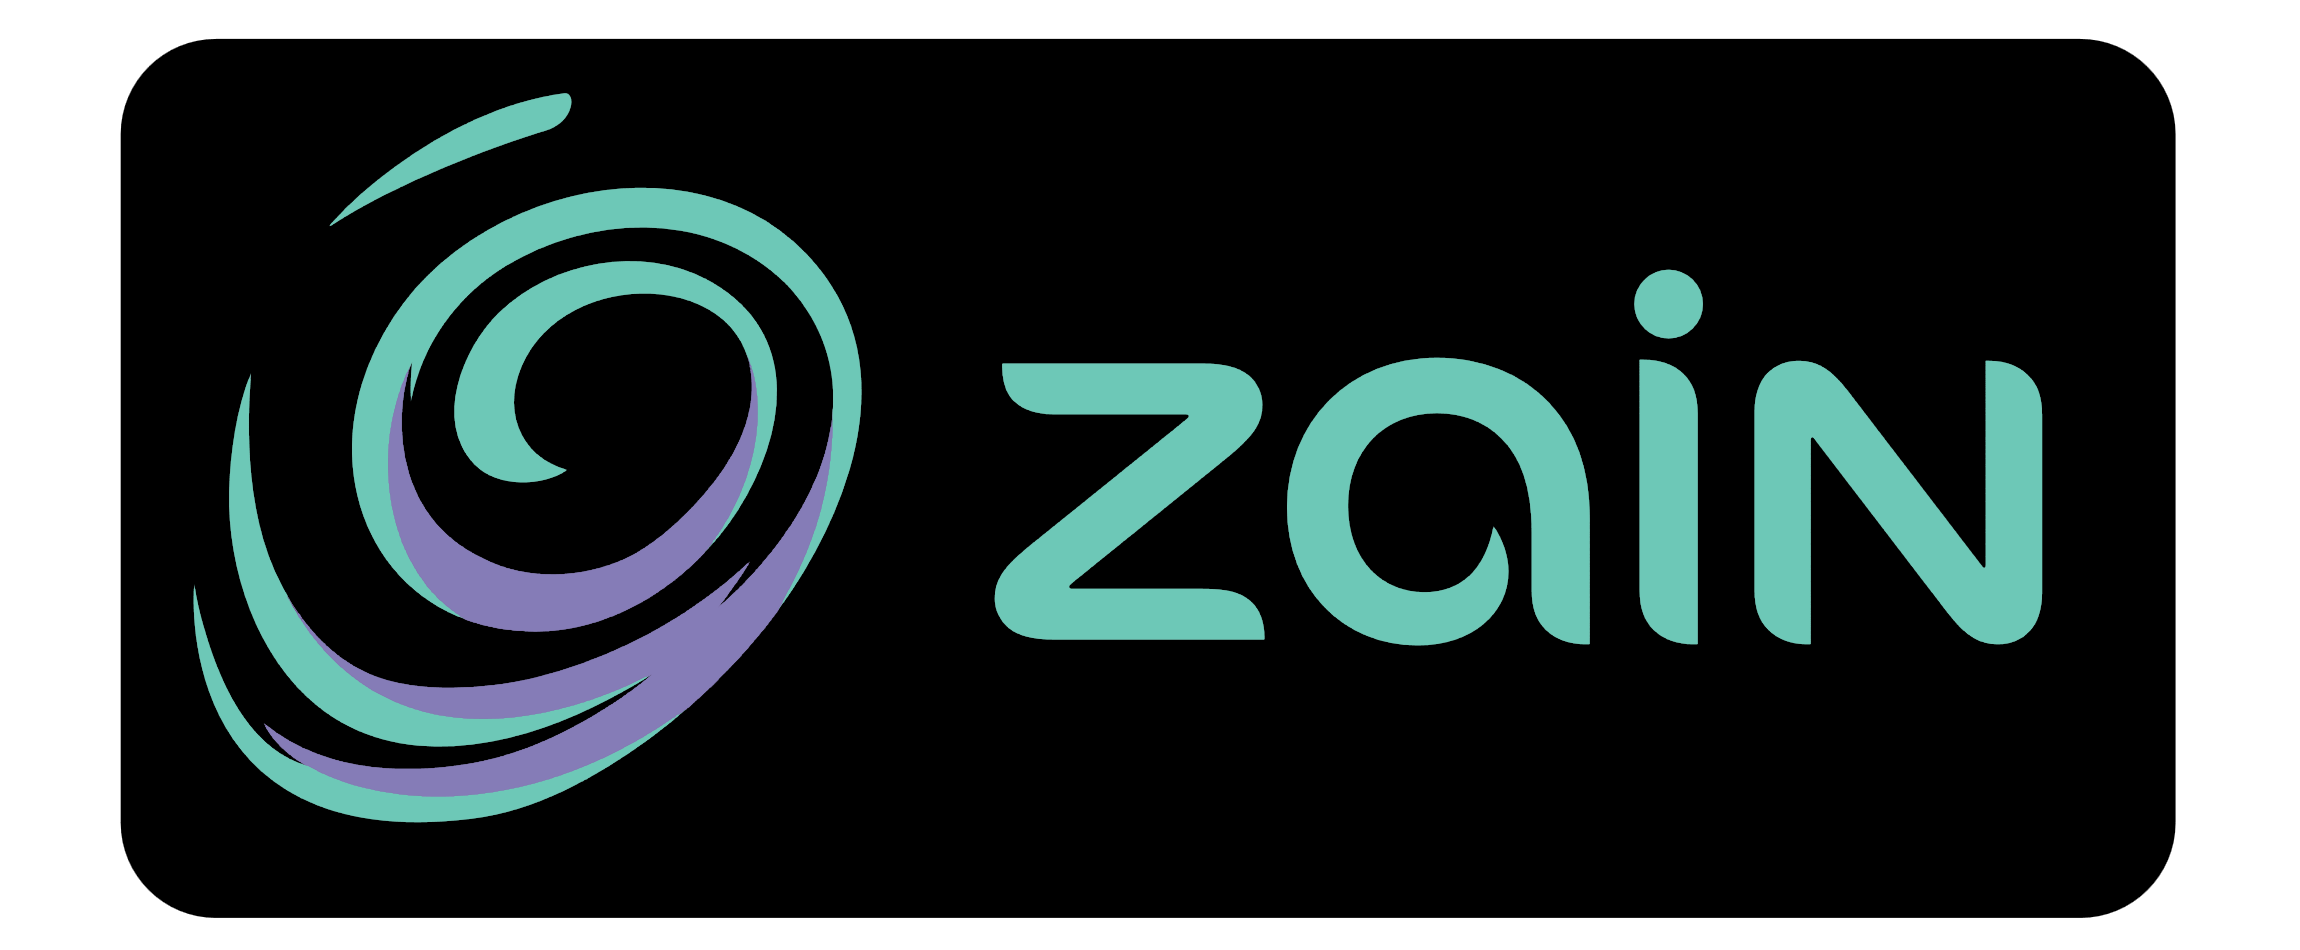 Zain Logo - Zain – Logos Download